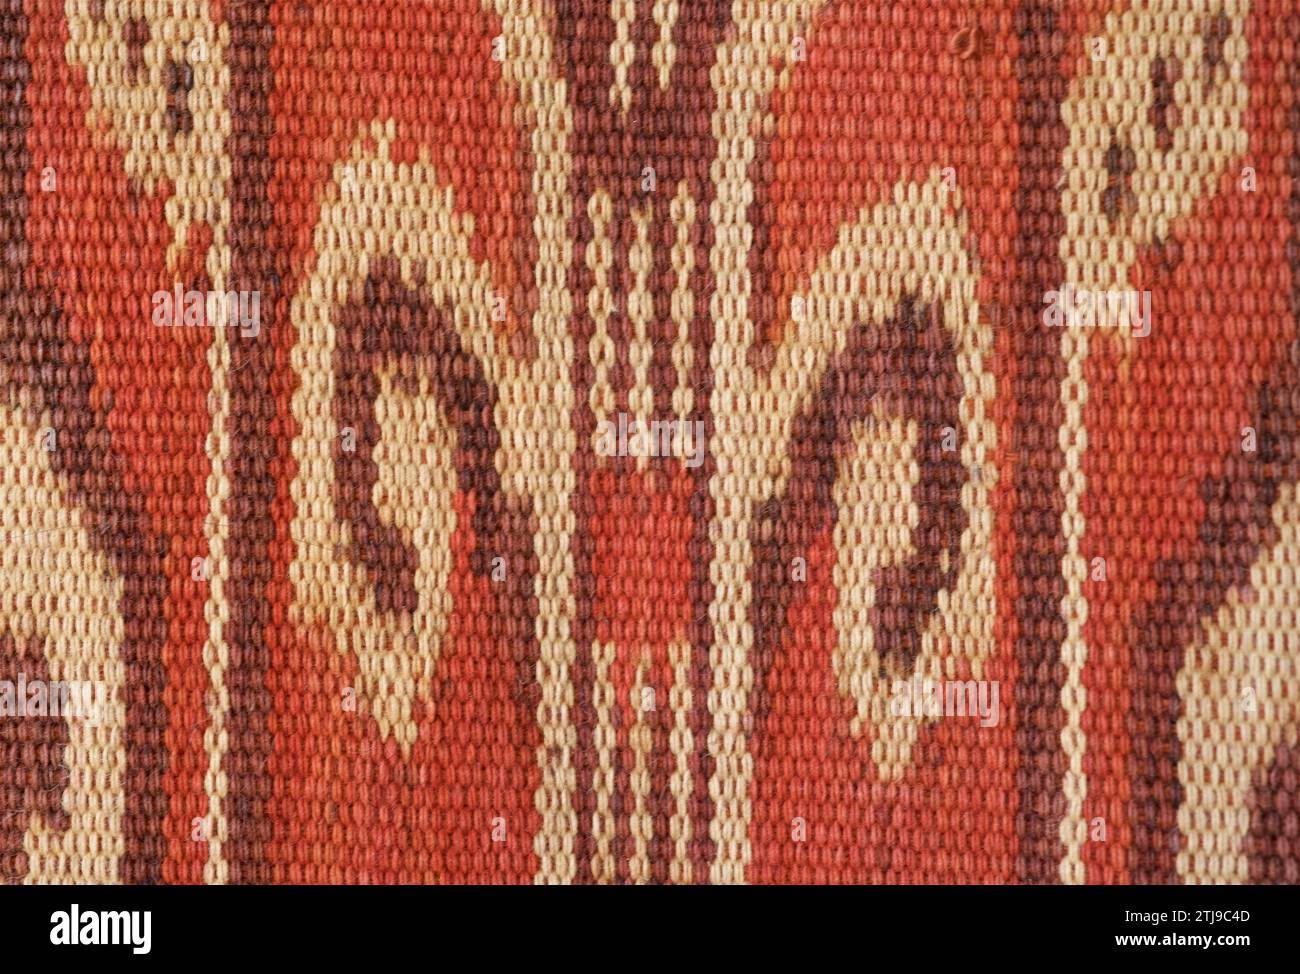 Dettaglio di ordito ikat decorato Pua Kumbu con motivi che rappresentano fronde di fogliame. Un IBAN, Dayak, tessuto cerimoniale del Borneo. Gli IBAN vivono sia a Sarawak, in Malesia, che a Kalimantan, in Indonesia. Proprietà rilasciata. Foto Stock